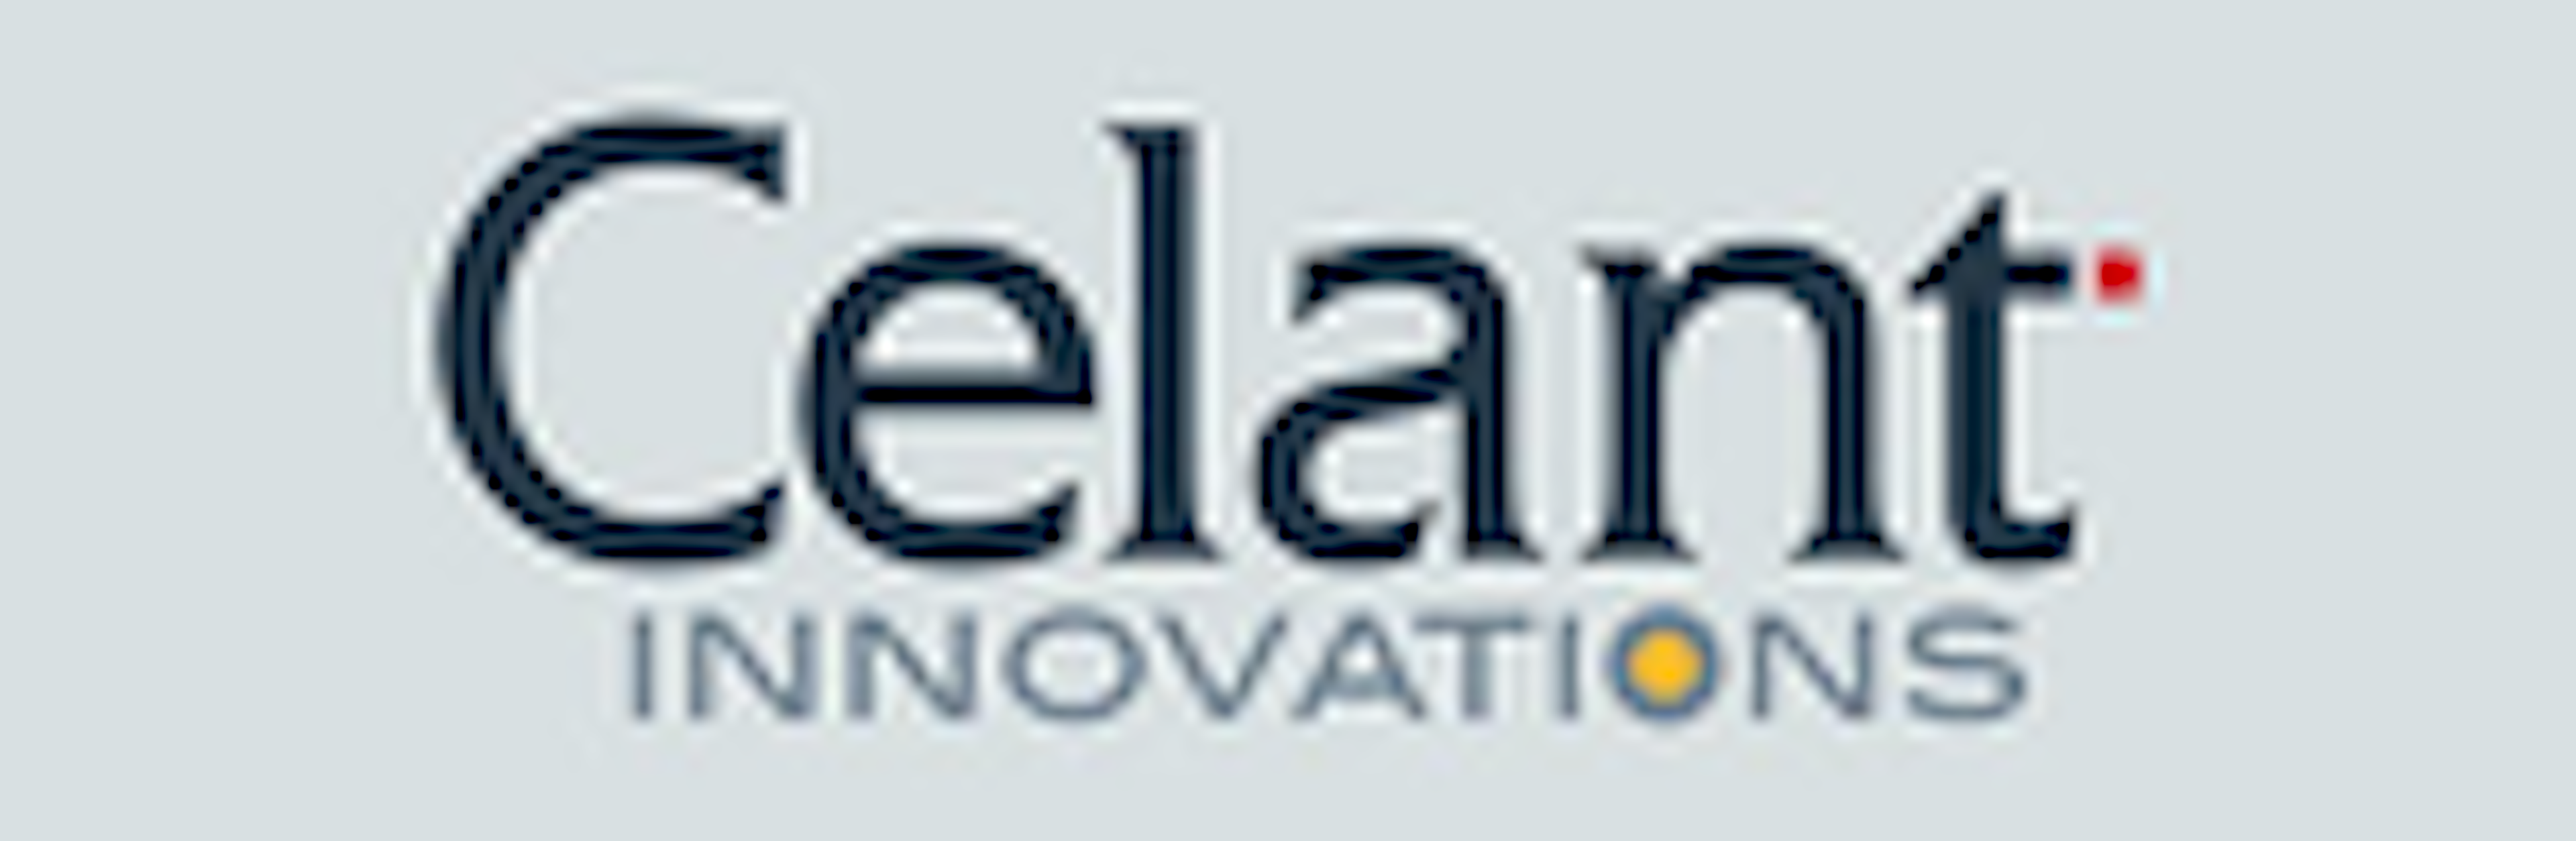 Celant Document Automation Engine Logo